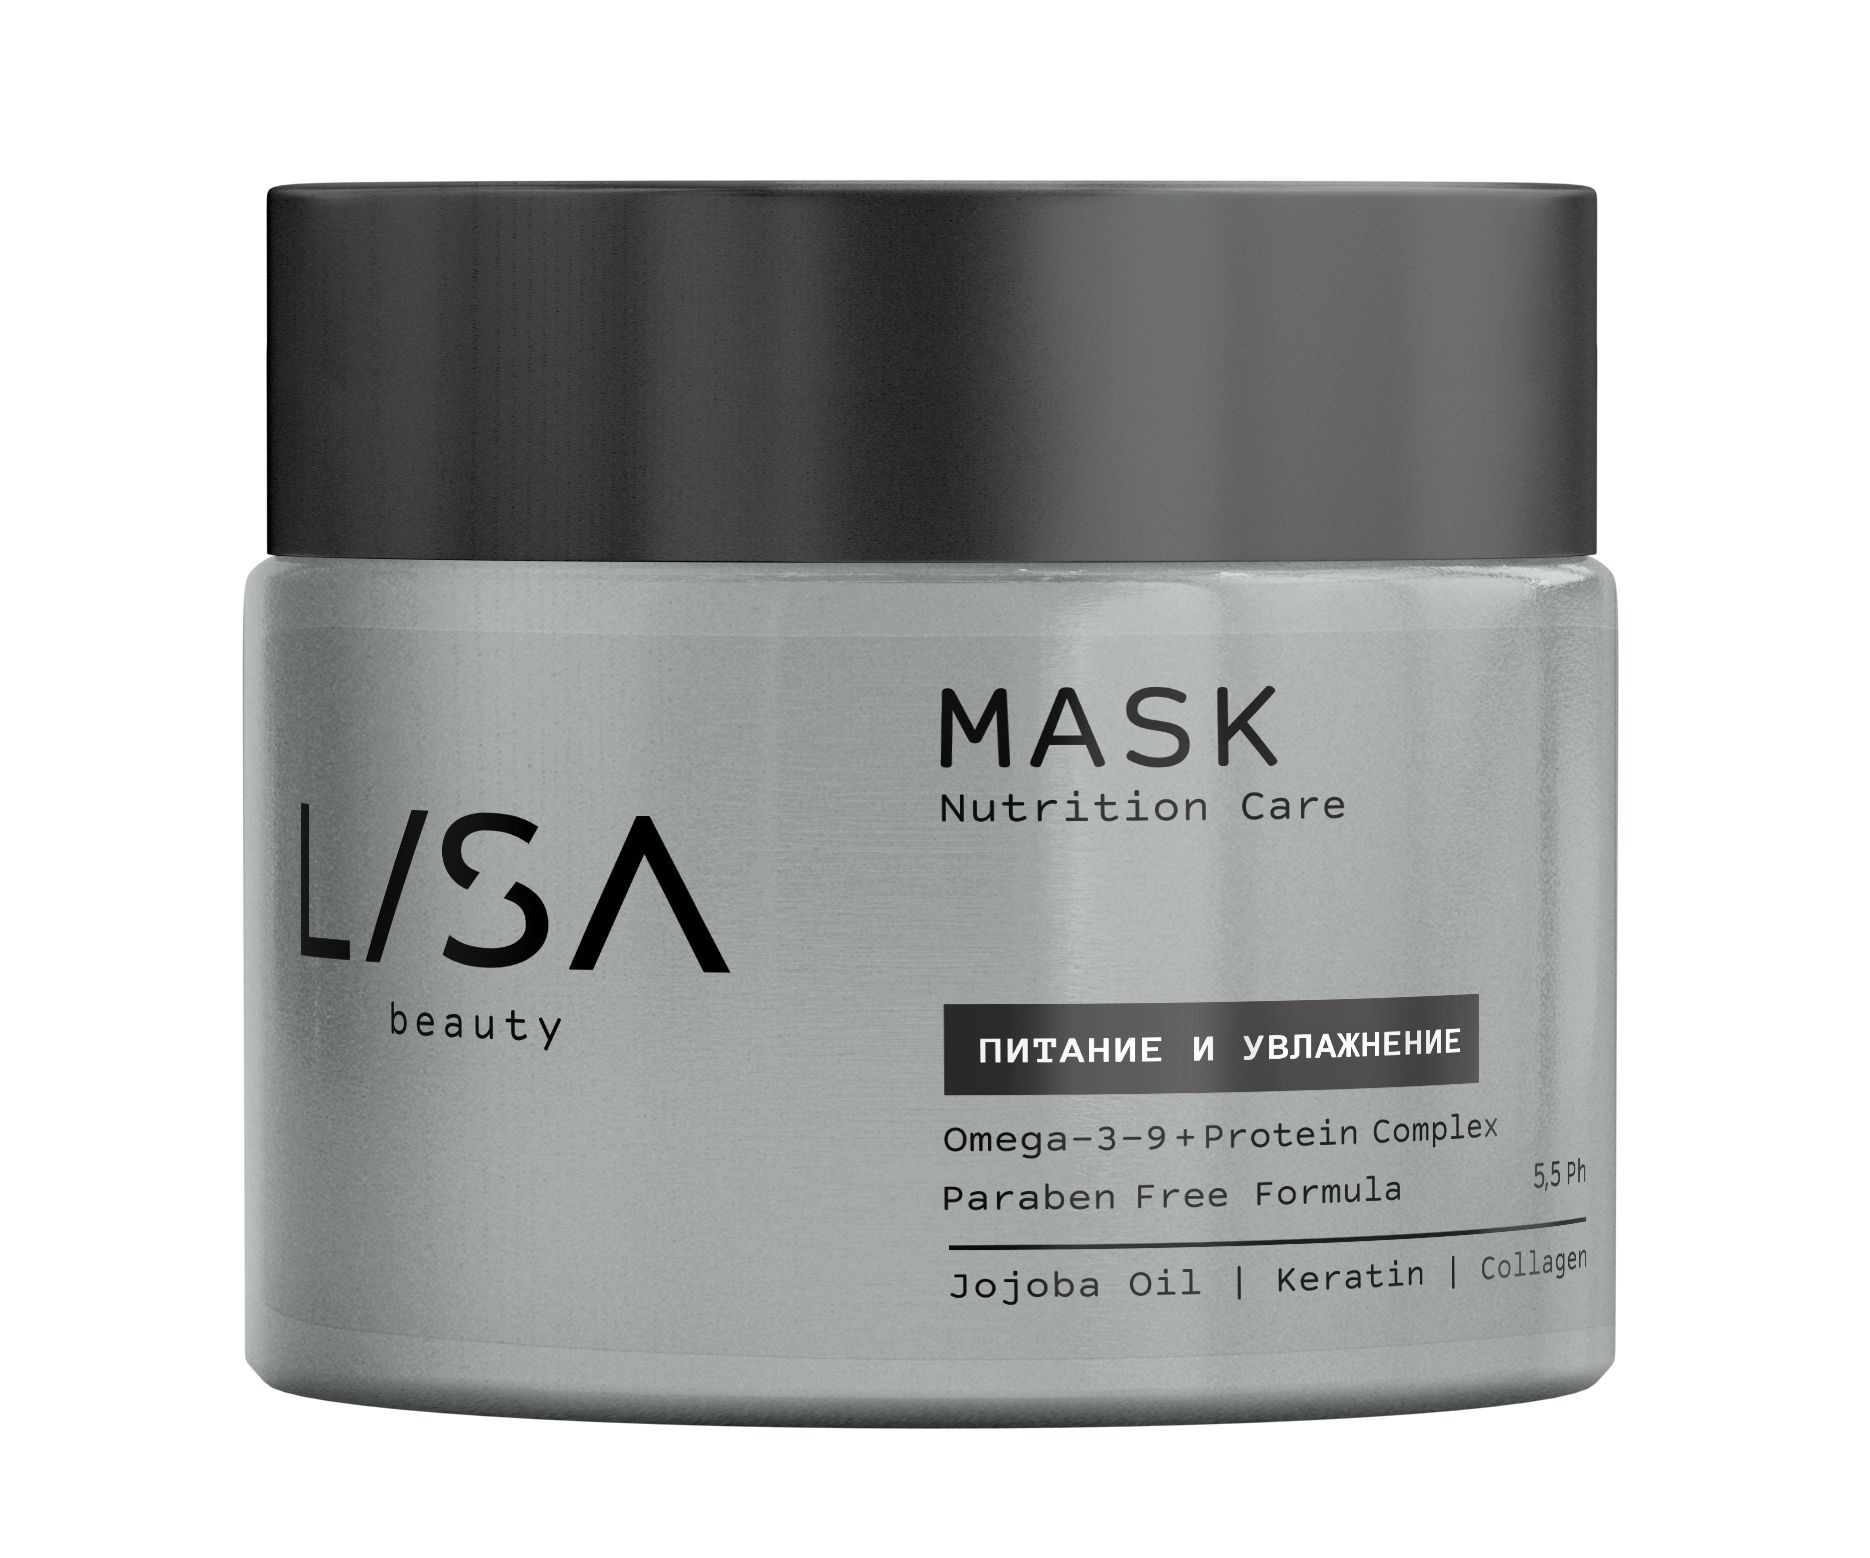 Маска для волос Lisa Nutrition Care питательная, для сухих волос, 300 мл lisa маска для волос nutrition care питание и увлажнение